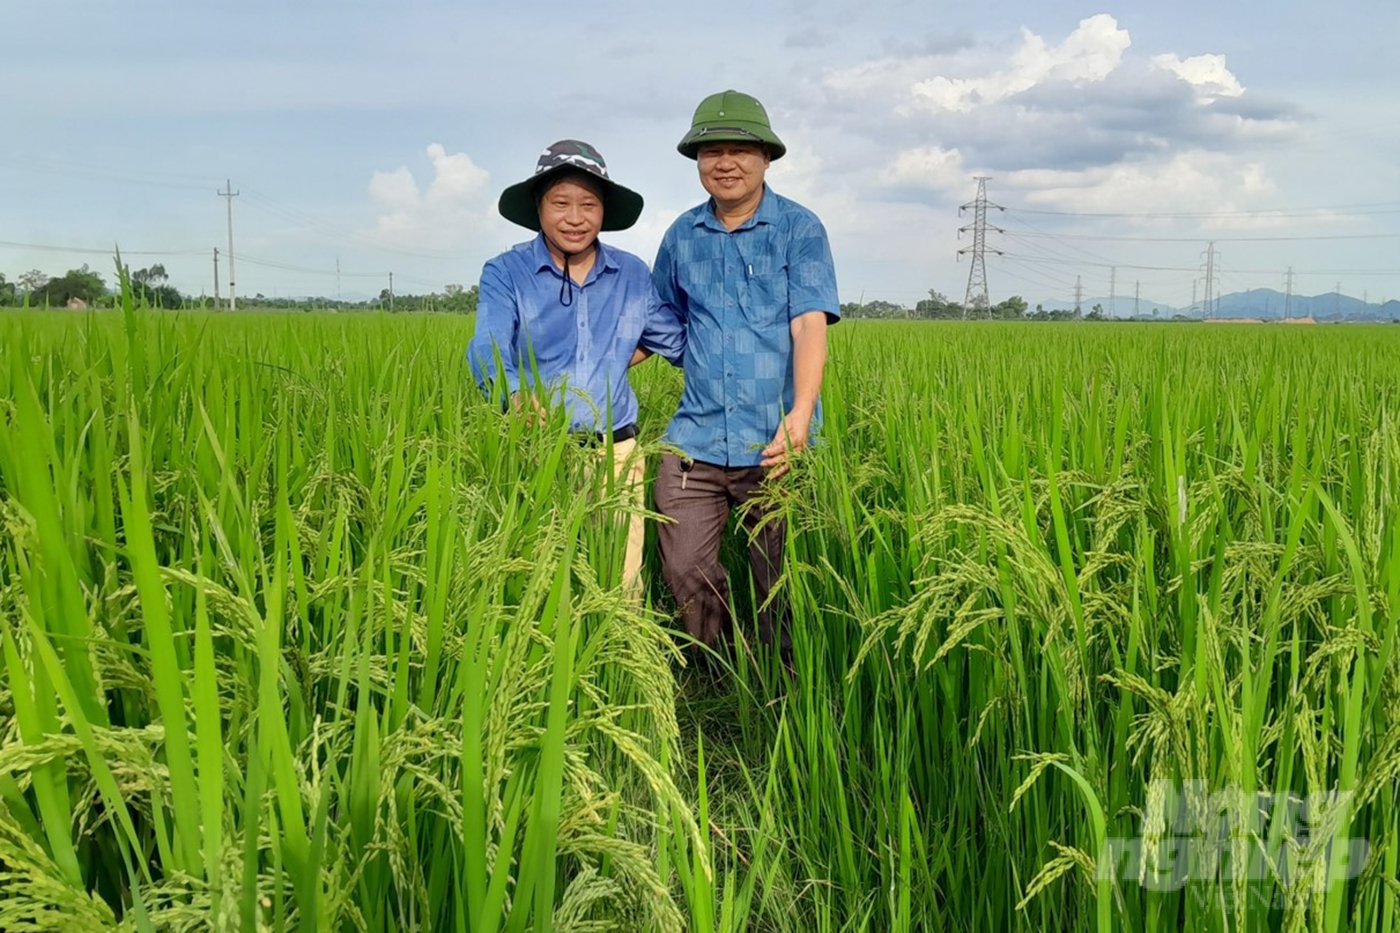 Phân bón hữu cơ PAN cho thấy hiệu quả rõ rệt trên đồng ruộng tại Nghệ An. Ảnh: Quốc Toản.